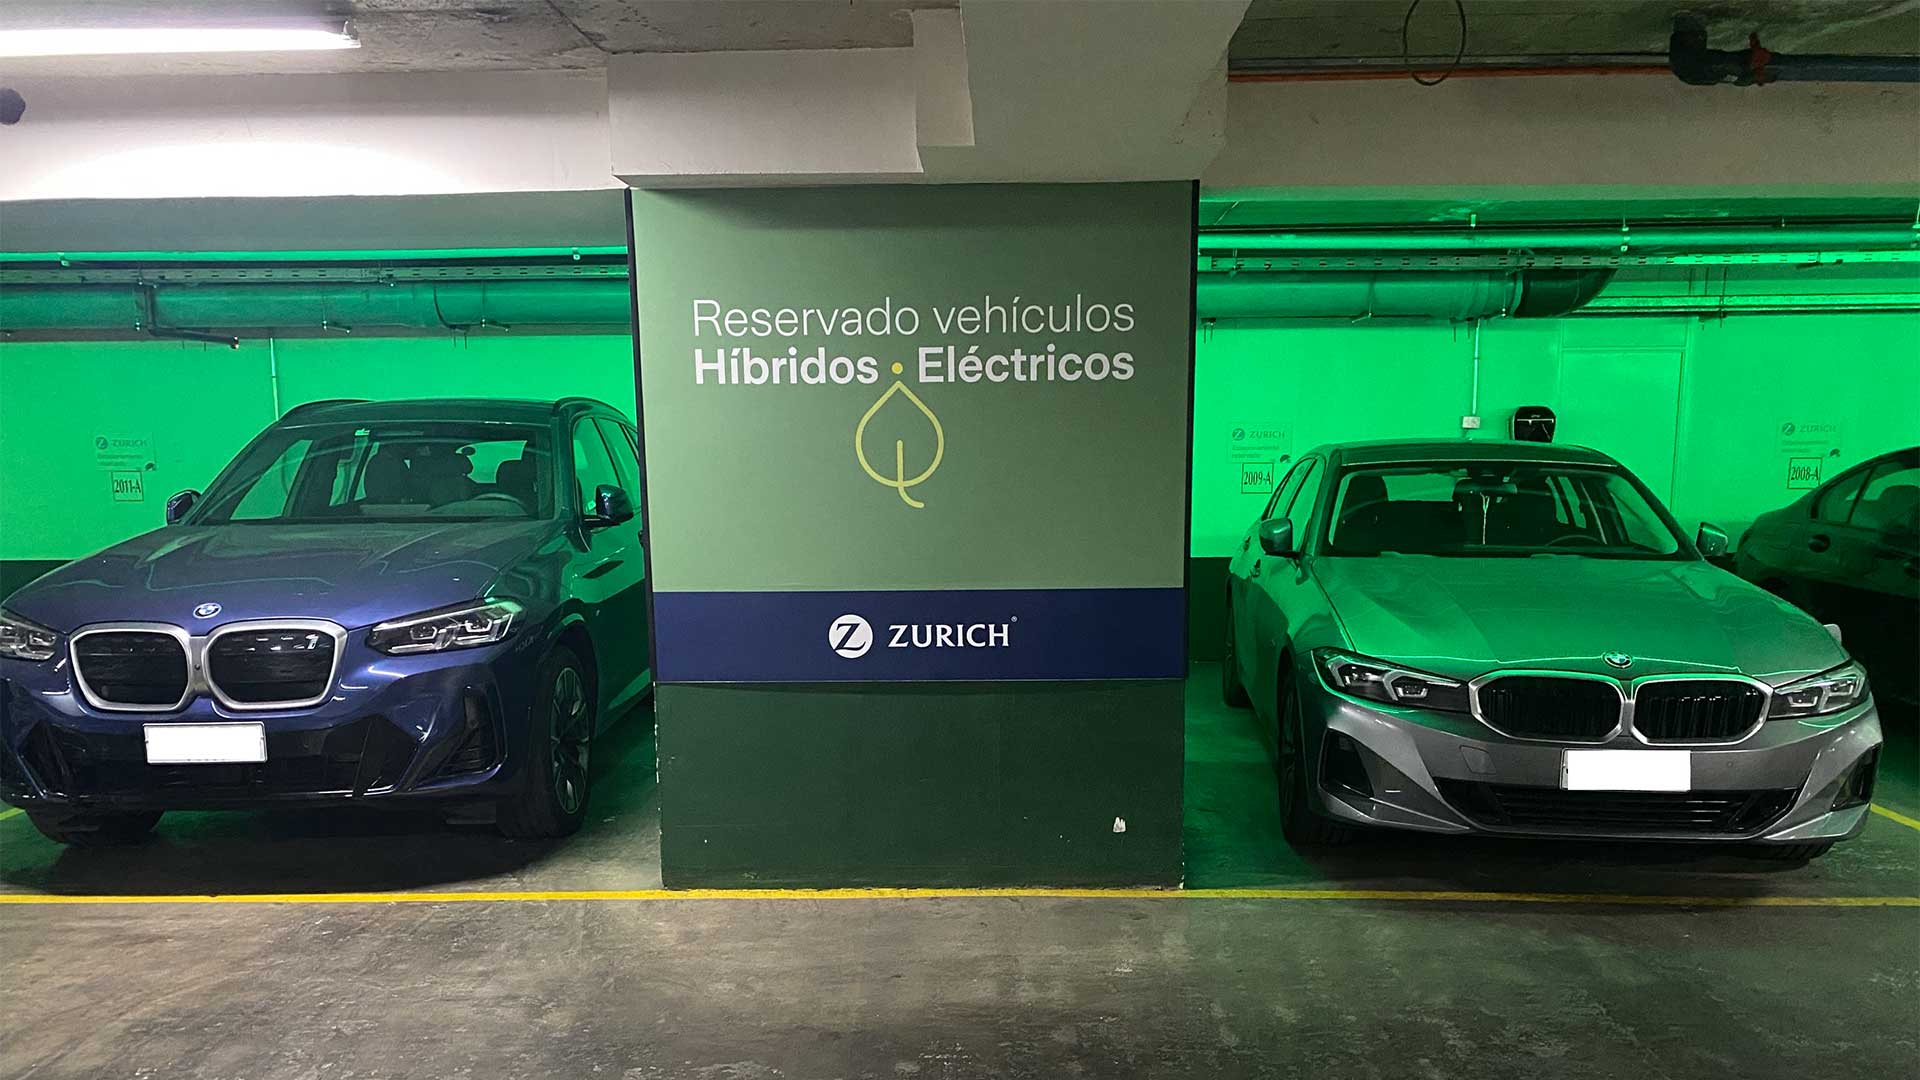 Hybrid fleet Zurich Chile